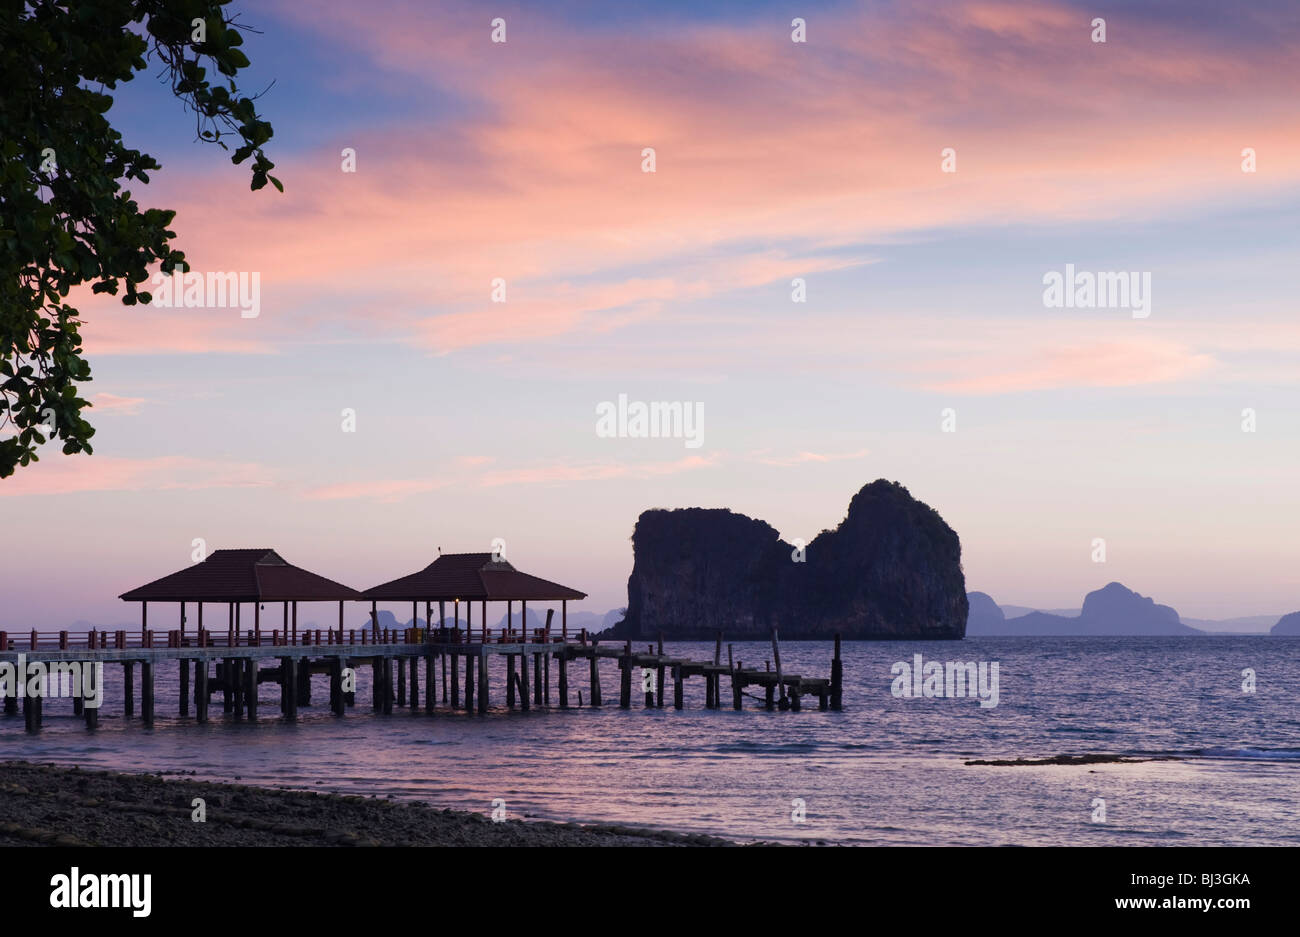 Sunrise, limestone rock formations in the sea, Ko Hai or Koh Ngai island, Trang, Thailand, Asia Stock Photo